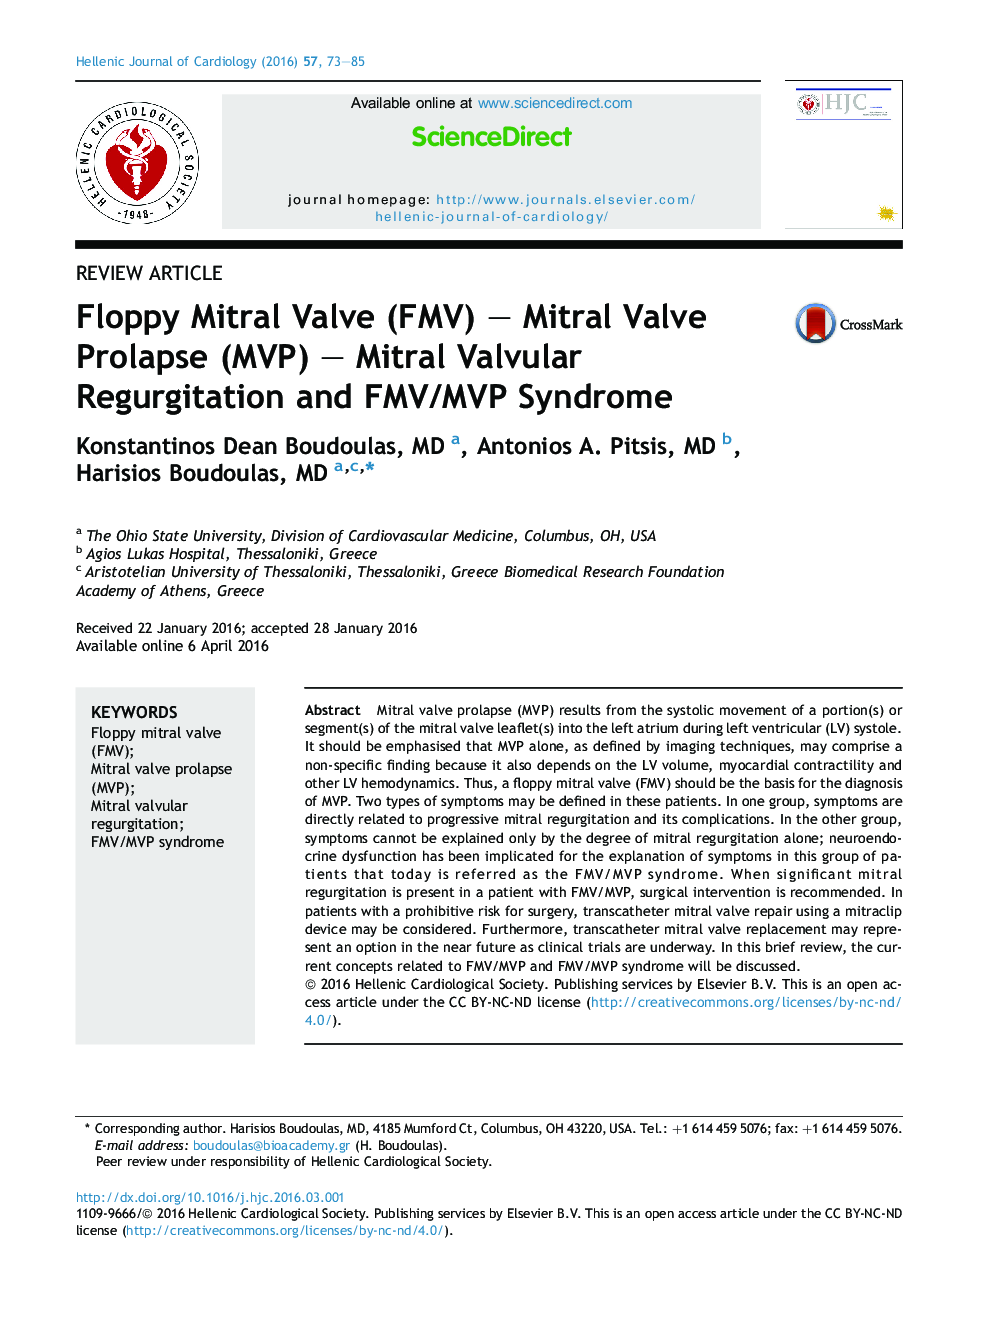 دریچه میترال فلاپی (FMV) - پرولاپس دریچه میترال (MVP) - نارسایی دریچه میترال و سندرم FMV/MVP